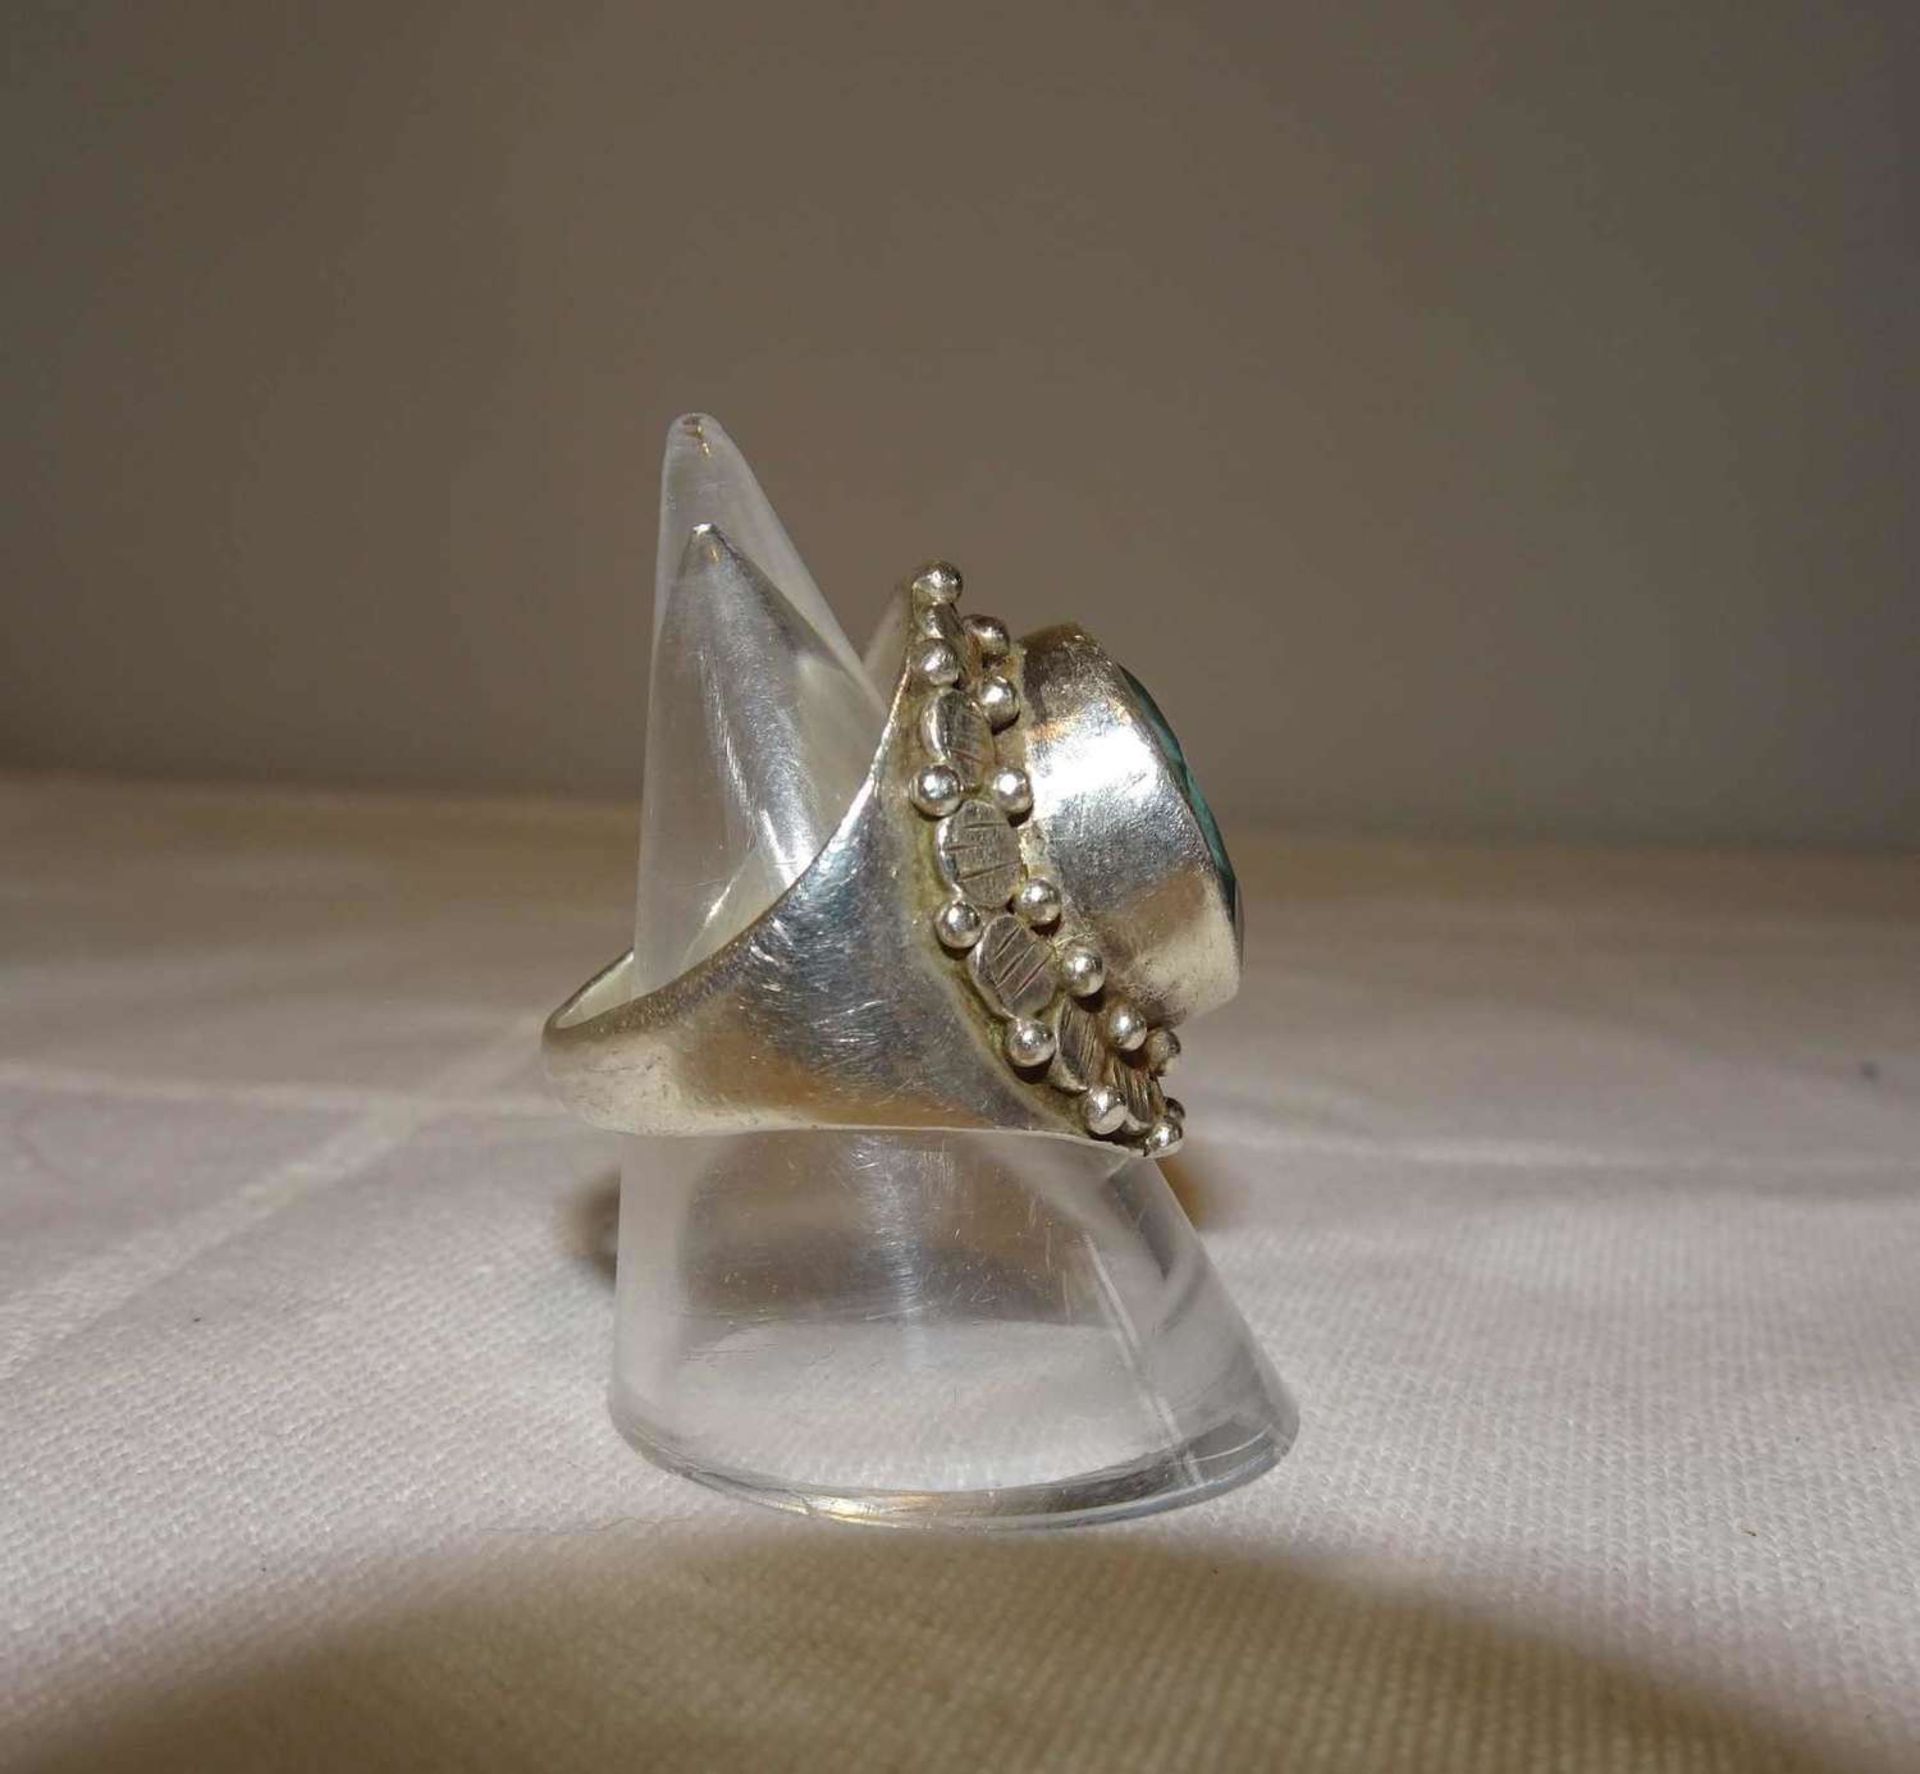 Damenring, 925er Silber, besetzt mit 1 Aquamarin. Handarbeit. Ringgröße 52, Gewicht ca. 9,3 gr. - Image 2 of 3